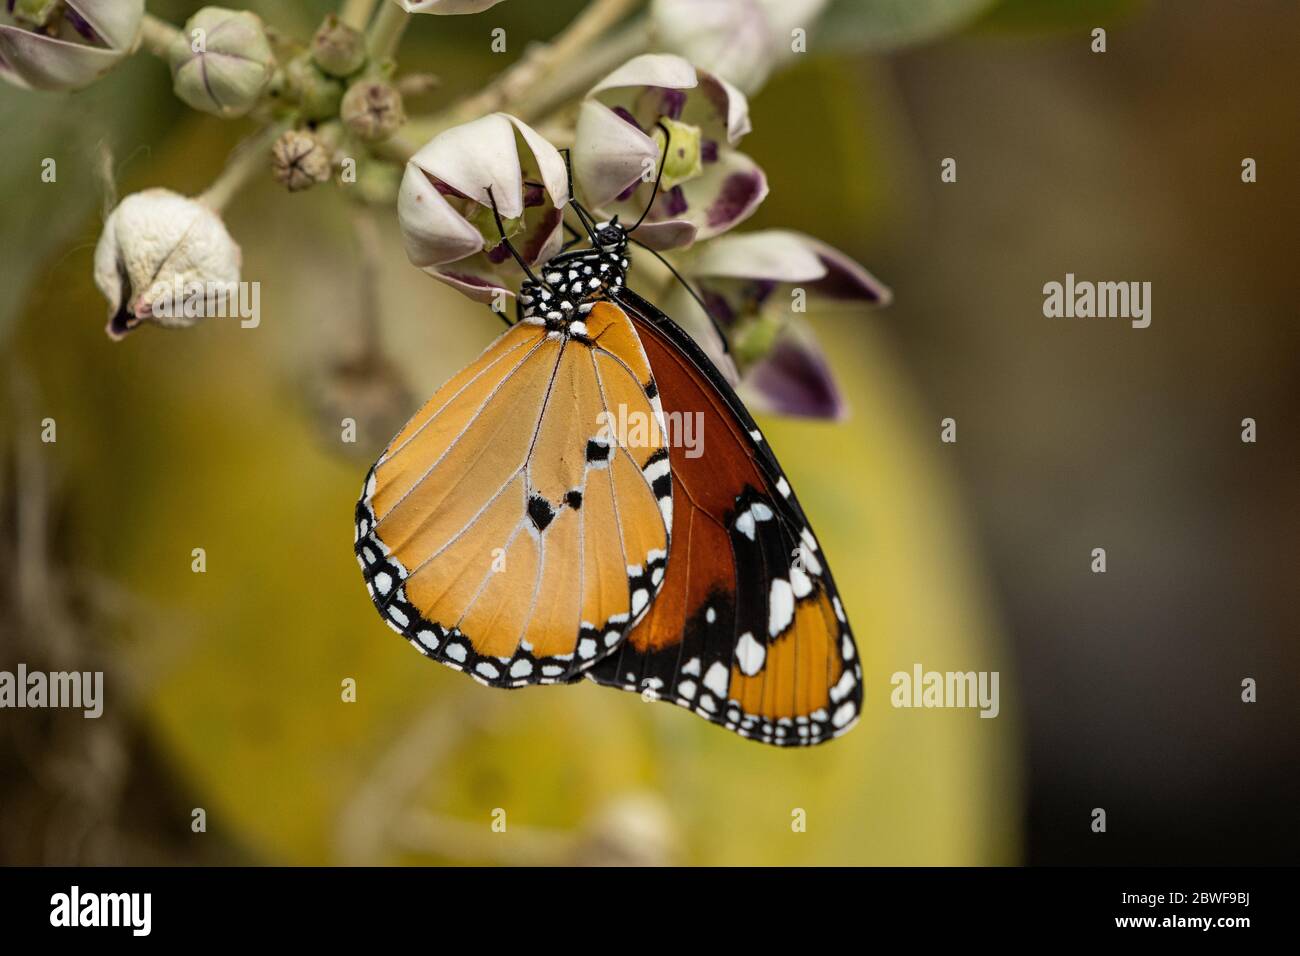 Tigre llano (Danaus chrysippus) AKA mariposa monarca africana en una flor fotografiada en Israel, en julio Foto de stock